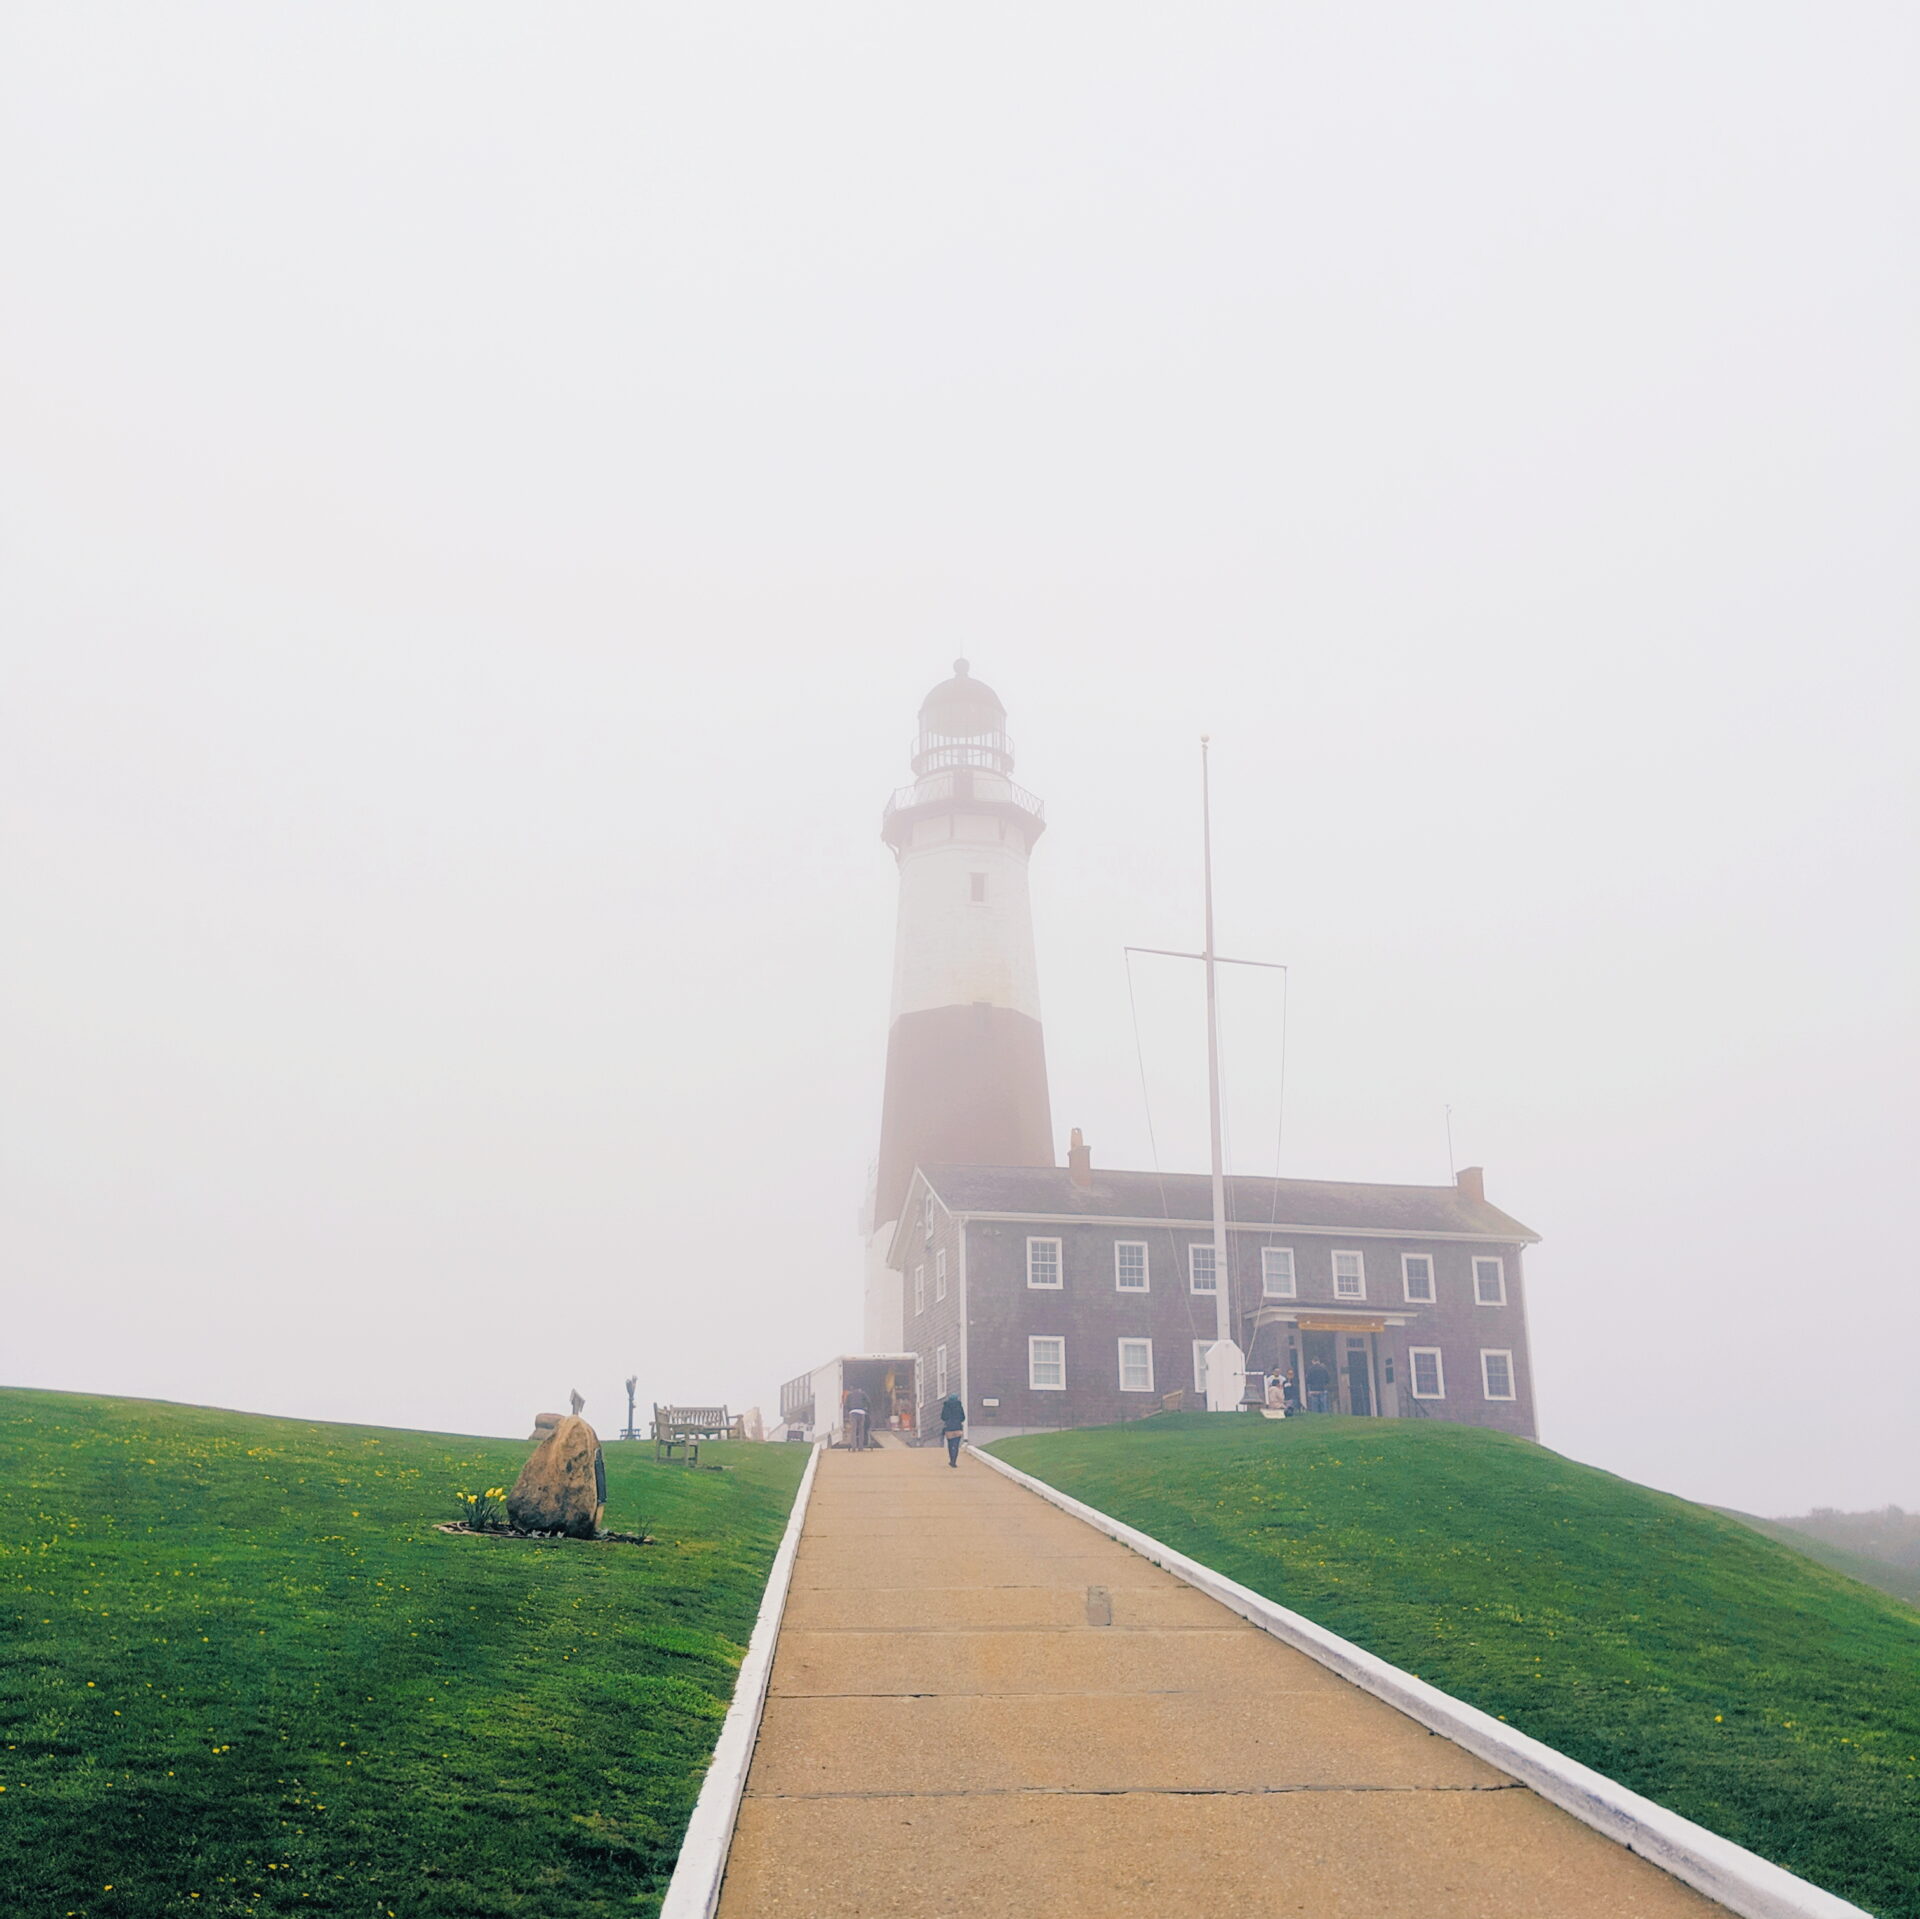 montauk lighthouse in the fog